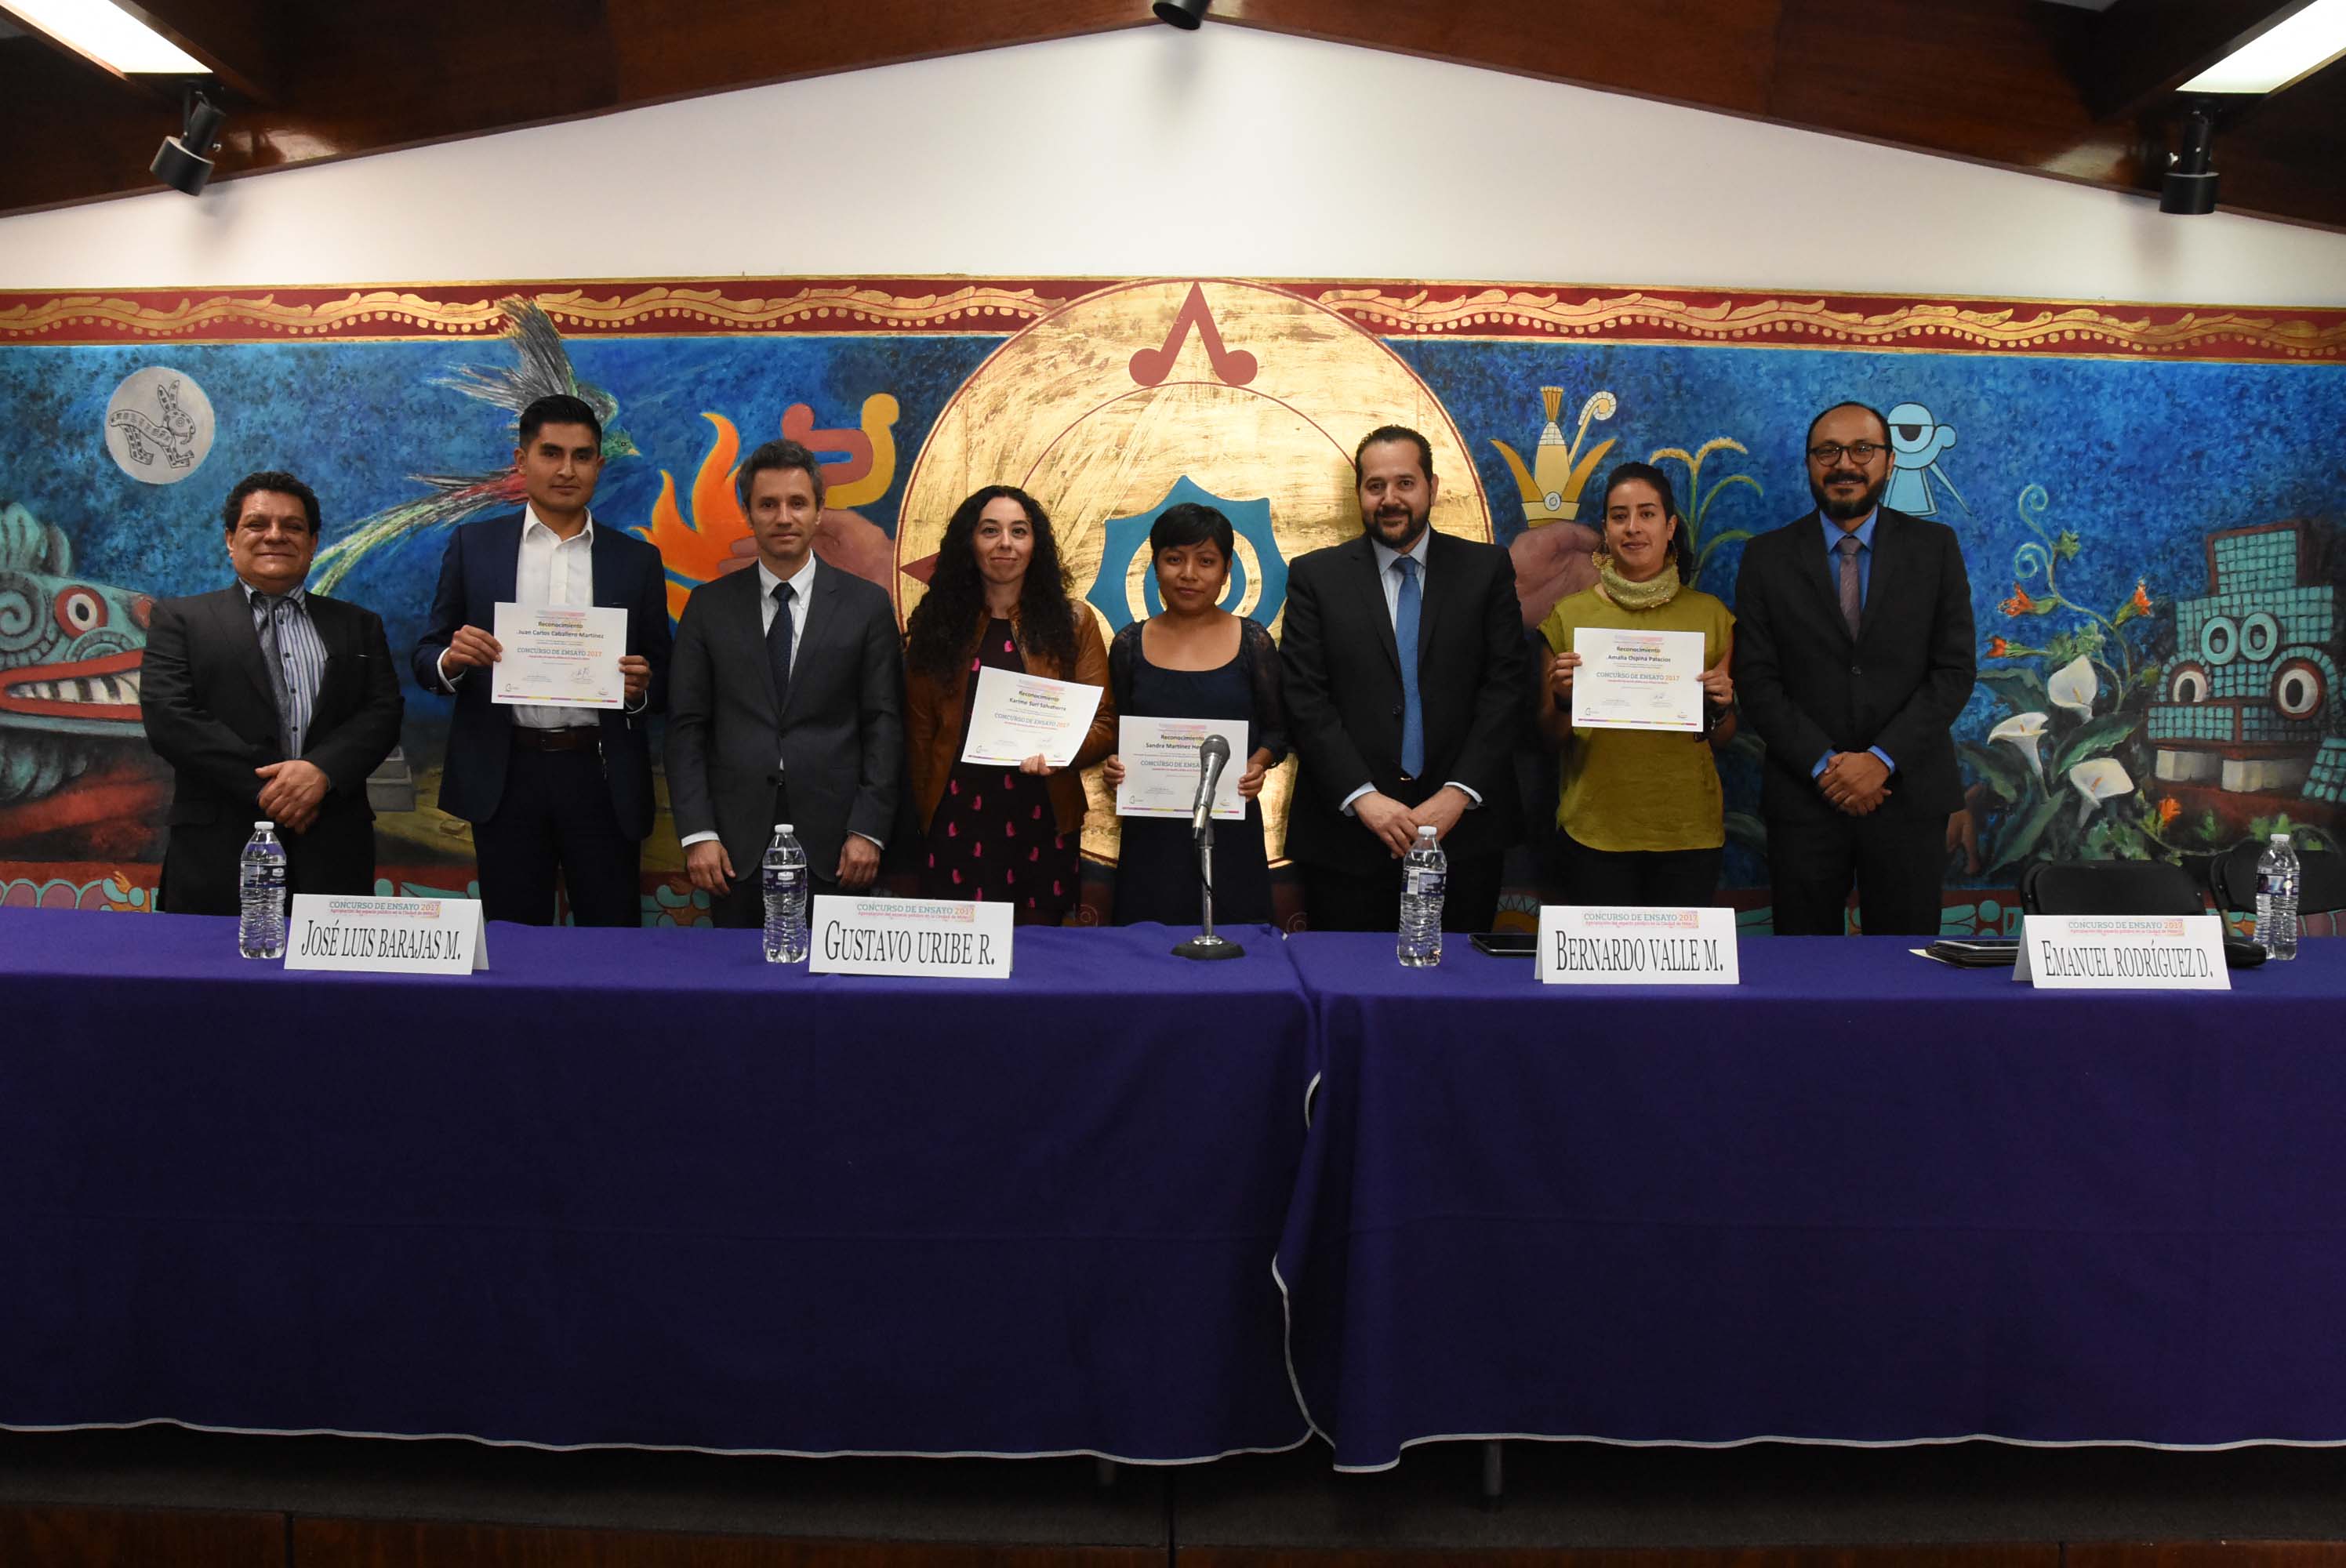 Reconoce IECM aportaciones de las y los jóvenes a la vida pública de la Ciudad de México, al entregar premios a ganadores del Concurso de Ensayo 2017